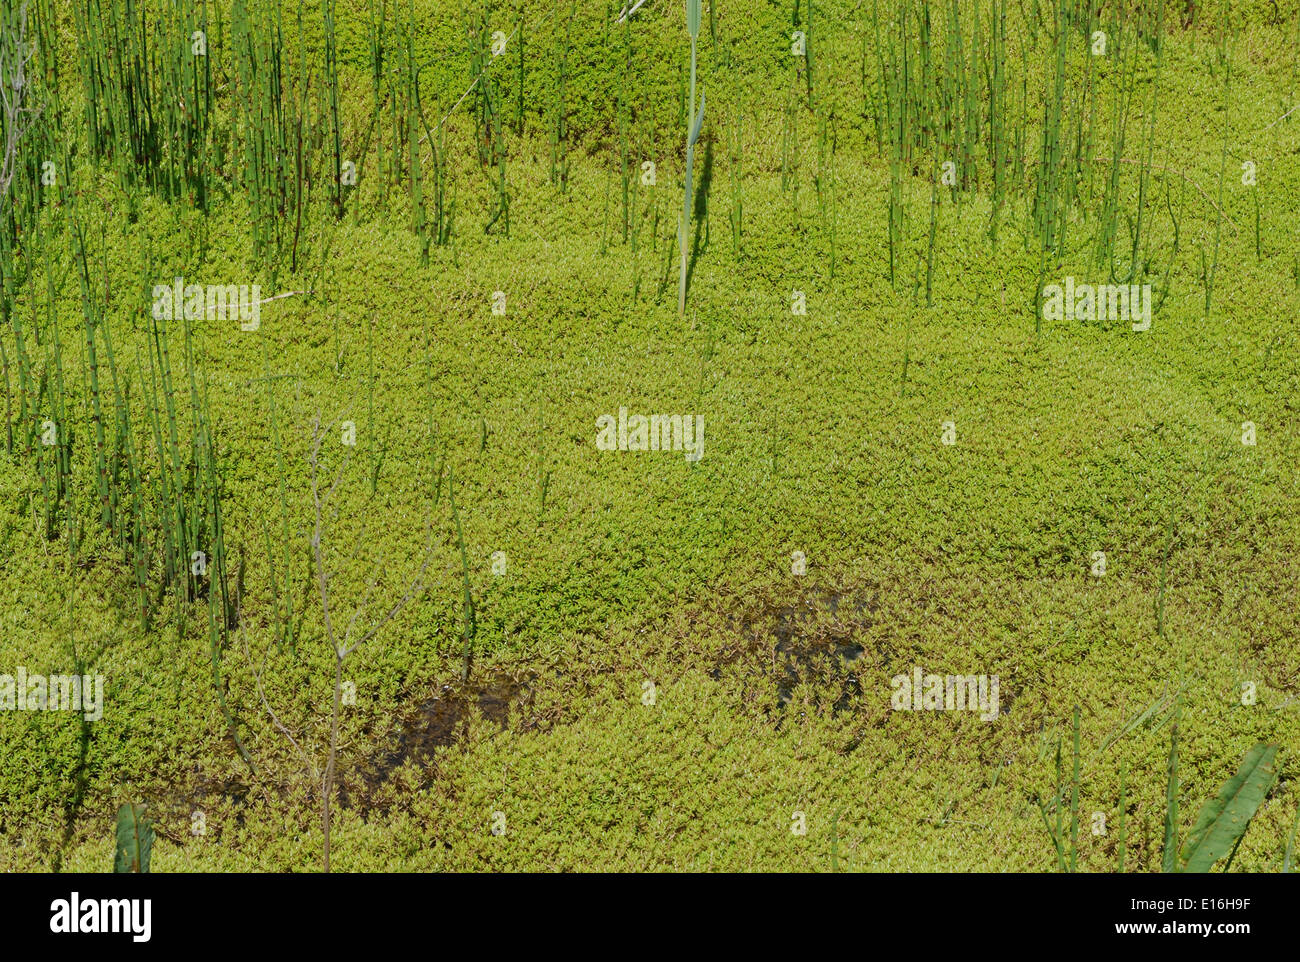 Nuova Zelanda pygmyweed (Crassula helmsii) zoccoli di fossi di drenaggio delle paludi a Dungeness. Dungeness, Kent, Regno Unito Foto Stock